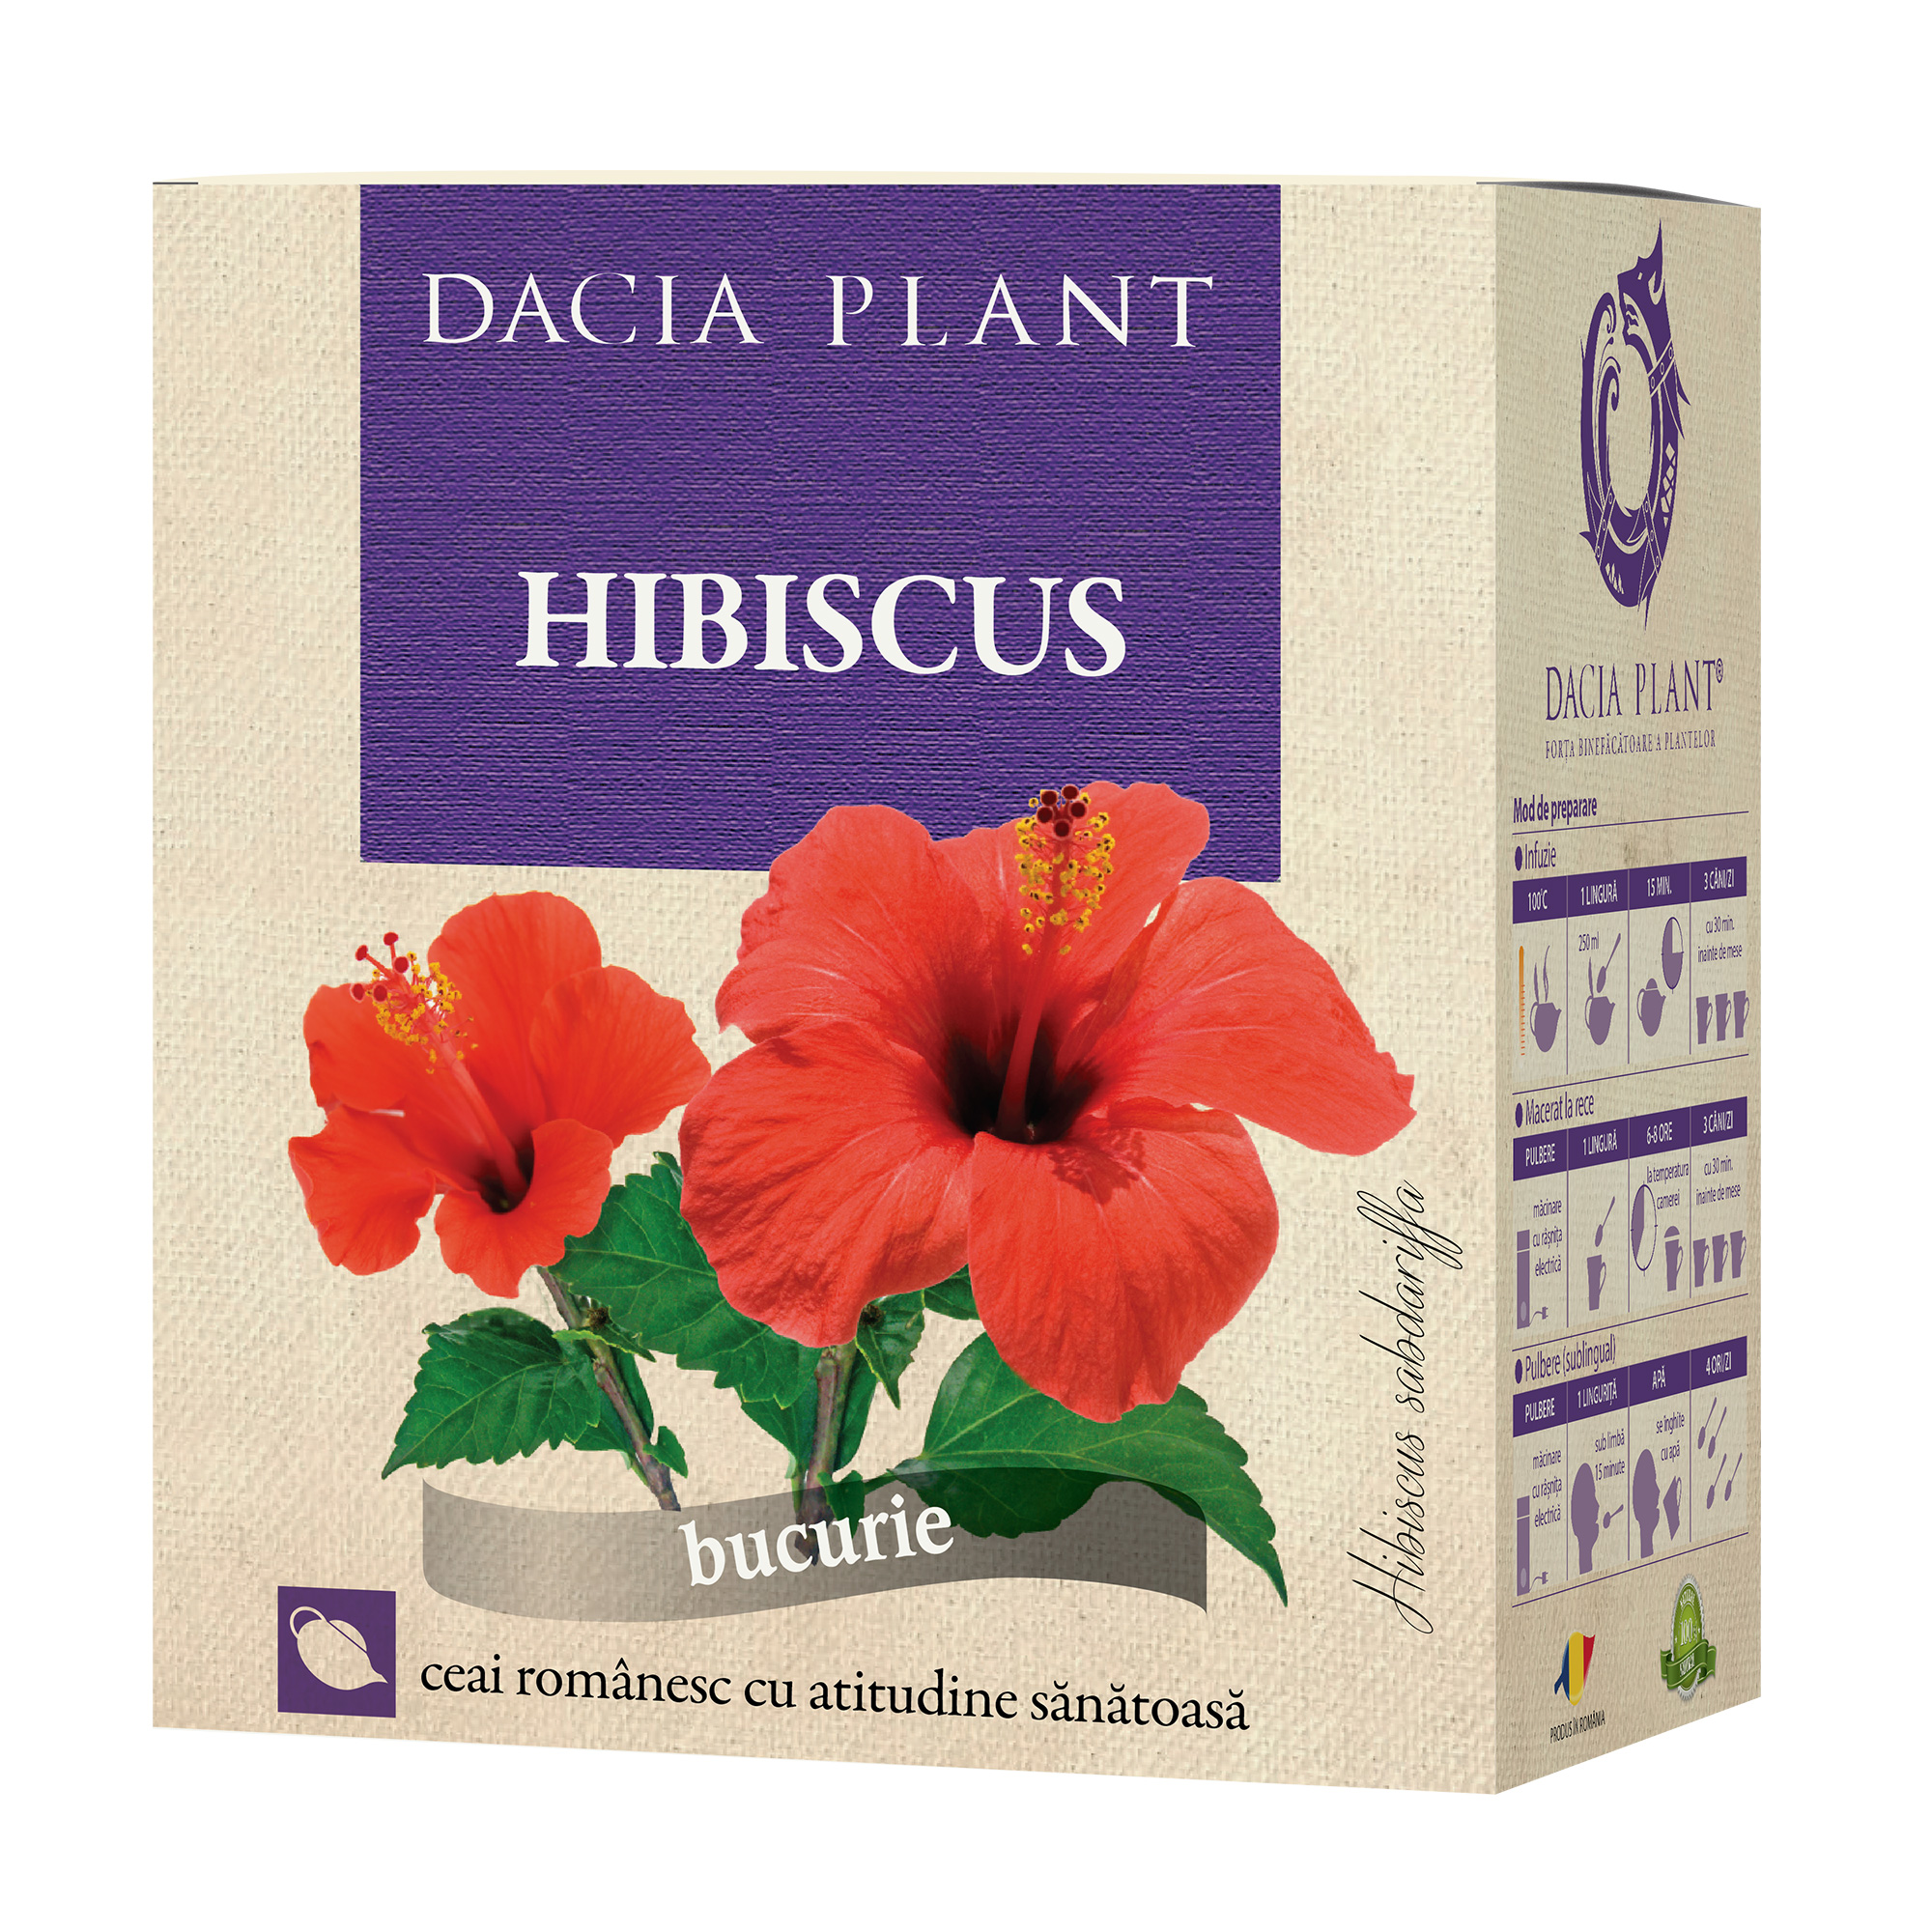 Ajută ceaiul de hibiscus la slăbit?